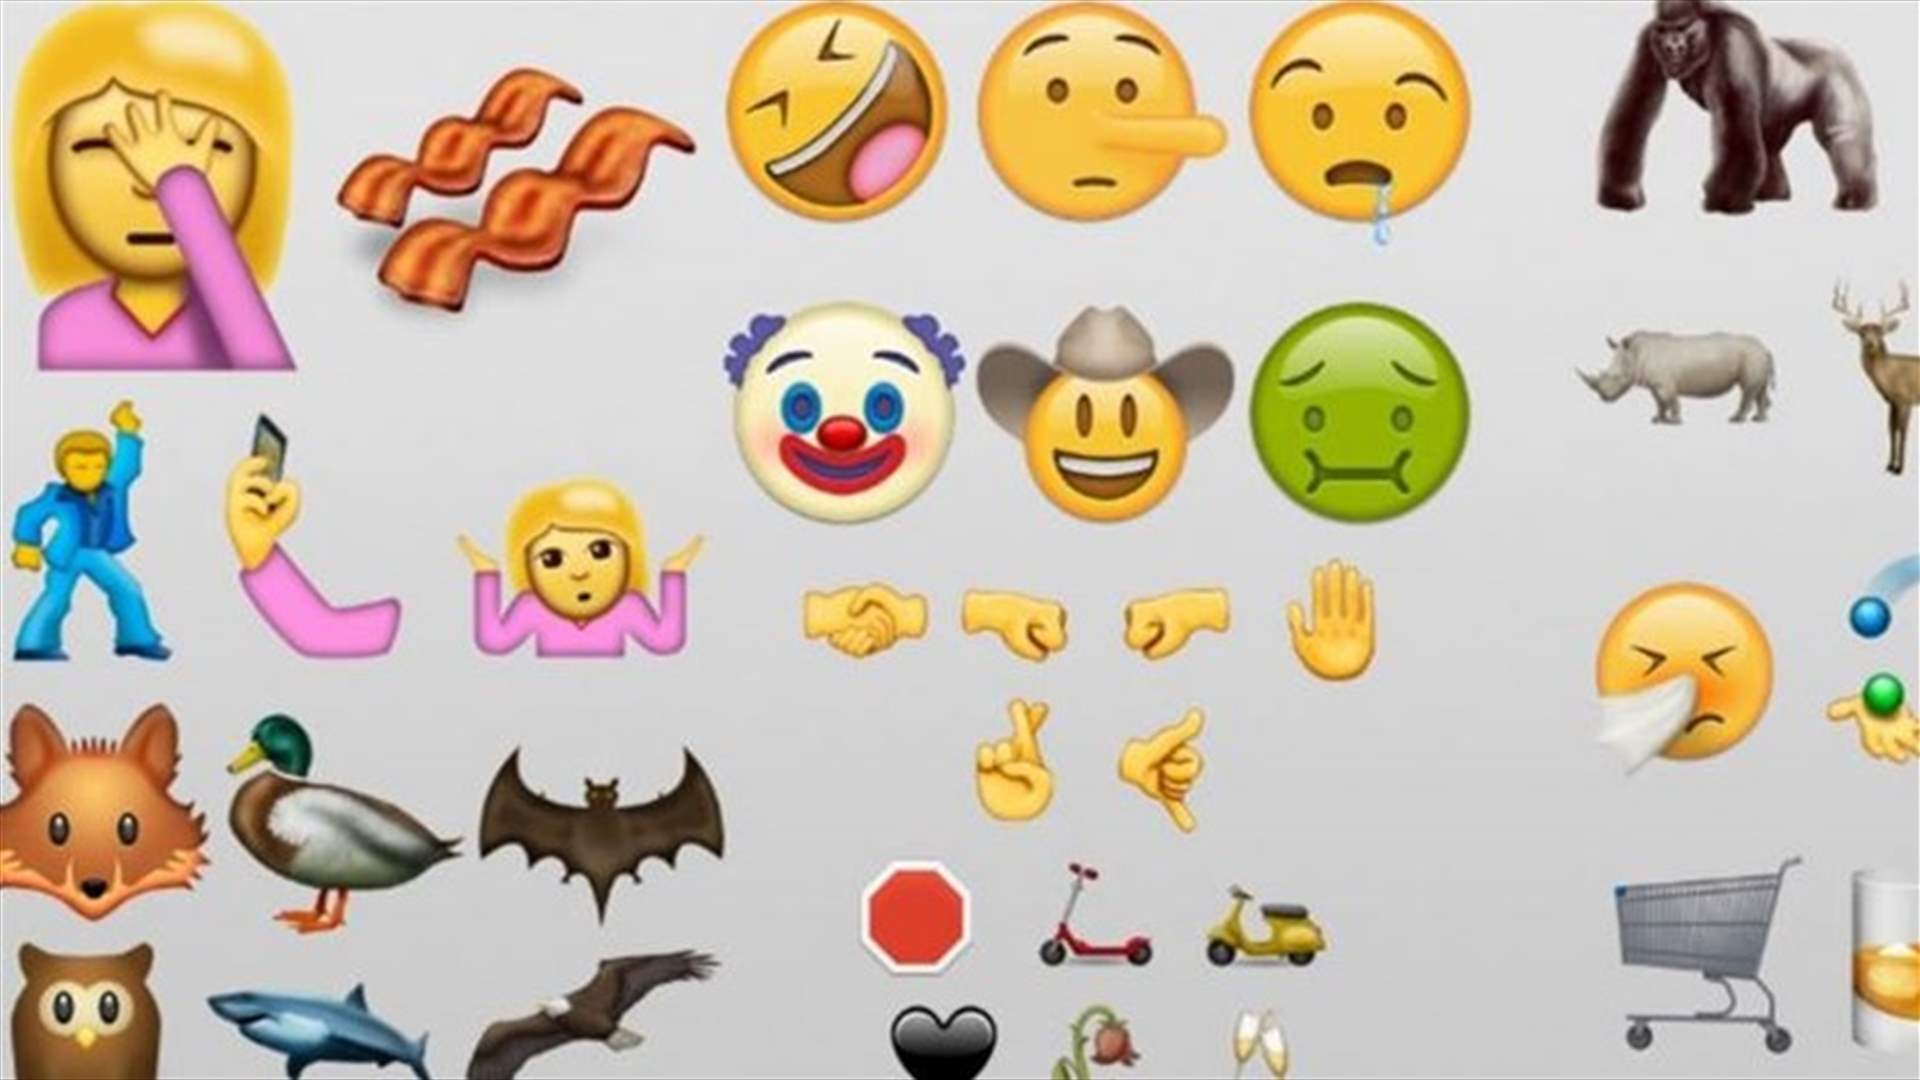  ماذا تقول الـ Emojis التي تستخدمونها عن شخصيتكم؟